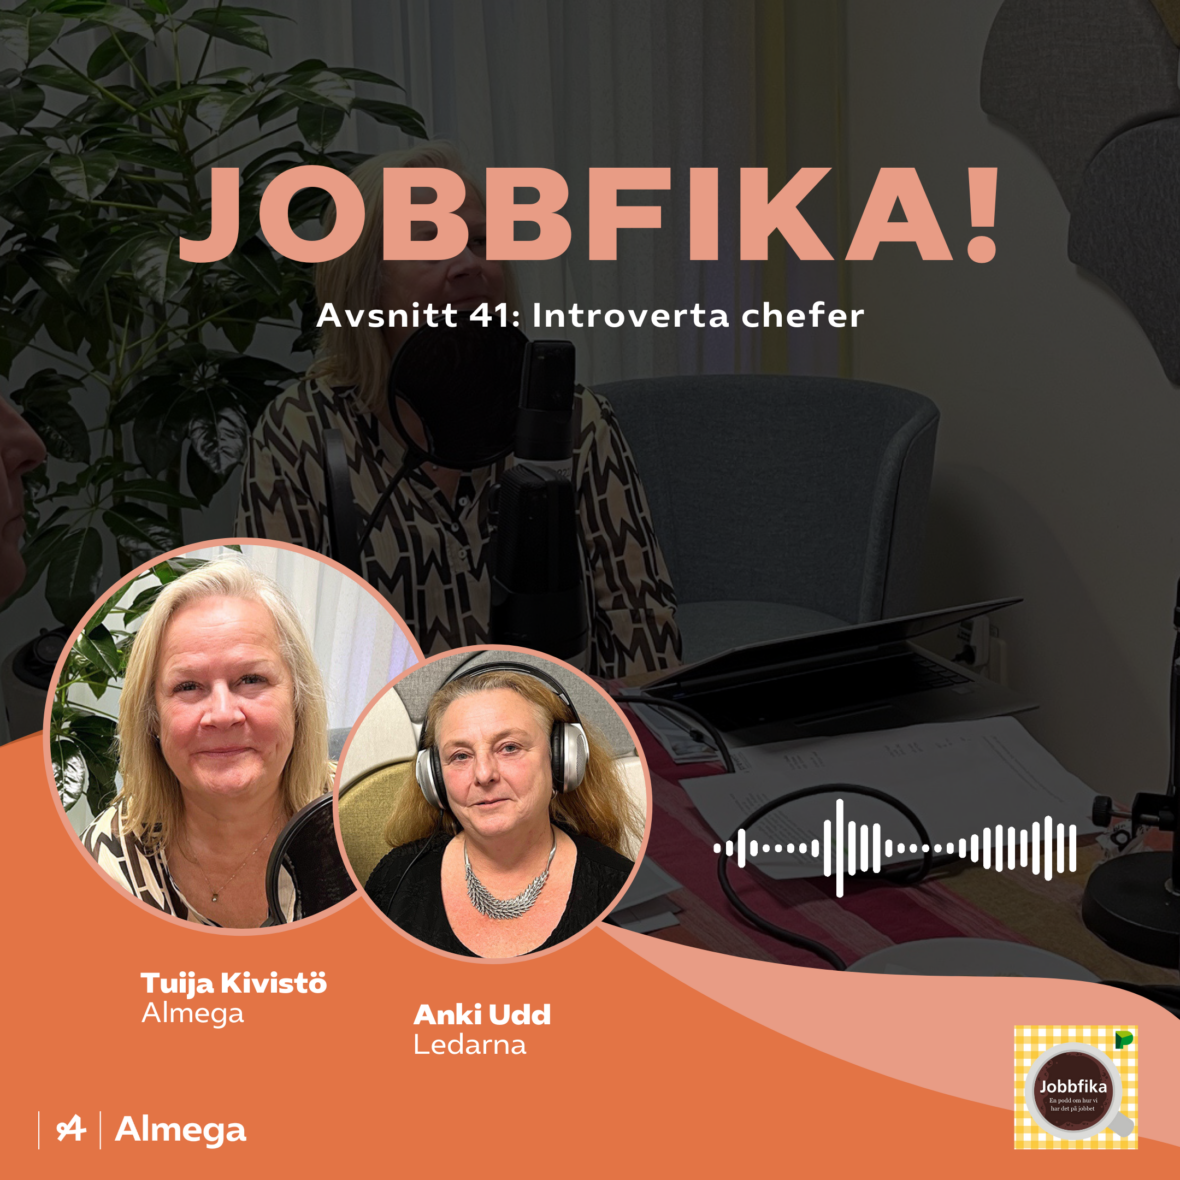 En grafisk bild med foto på Anki Udd från Ledarna samt Tuija Kivistö från Almega. Text i bild: Jobbfika, avsnitt 41, Introverta chefer. Länk till Prevents webbplats där poddavsnittet finns att lysnna på. 